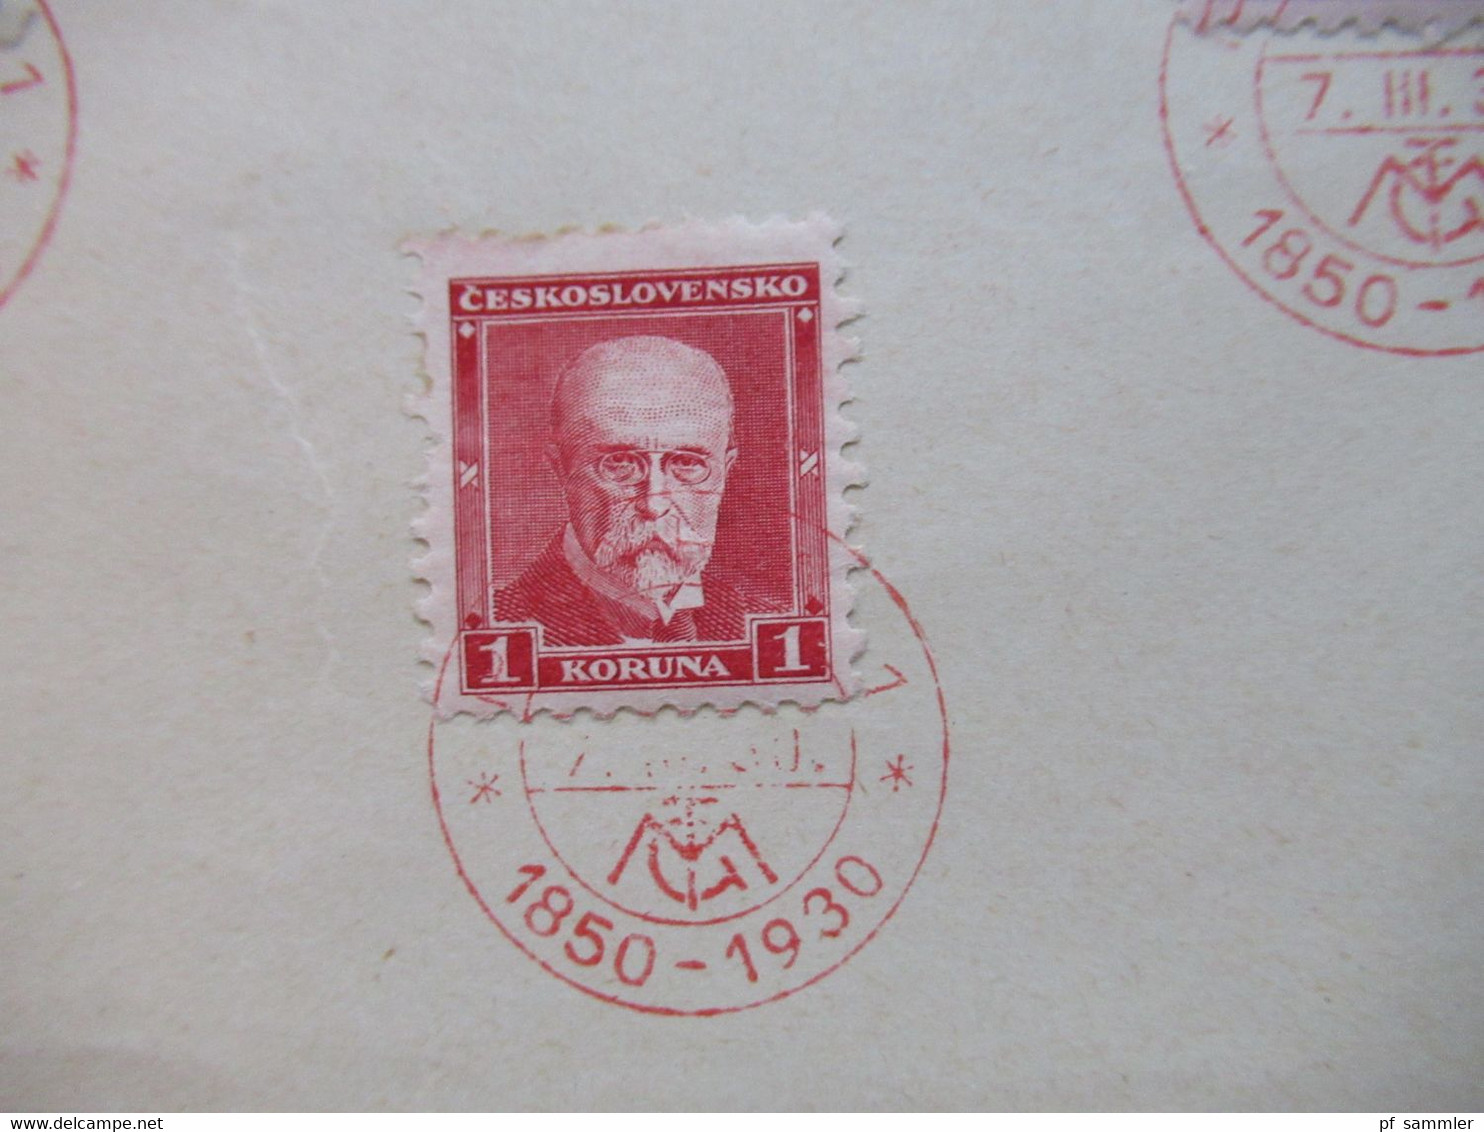 CSSR 1930 Freimarken Präsident Massaryk Nr.295 / 297 Blanko Zettel Mit Rotem Sonderstempel Praha 1 1850 - 1930 - Briefe U. Dokumente